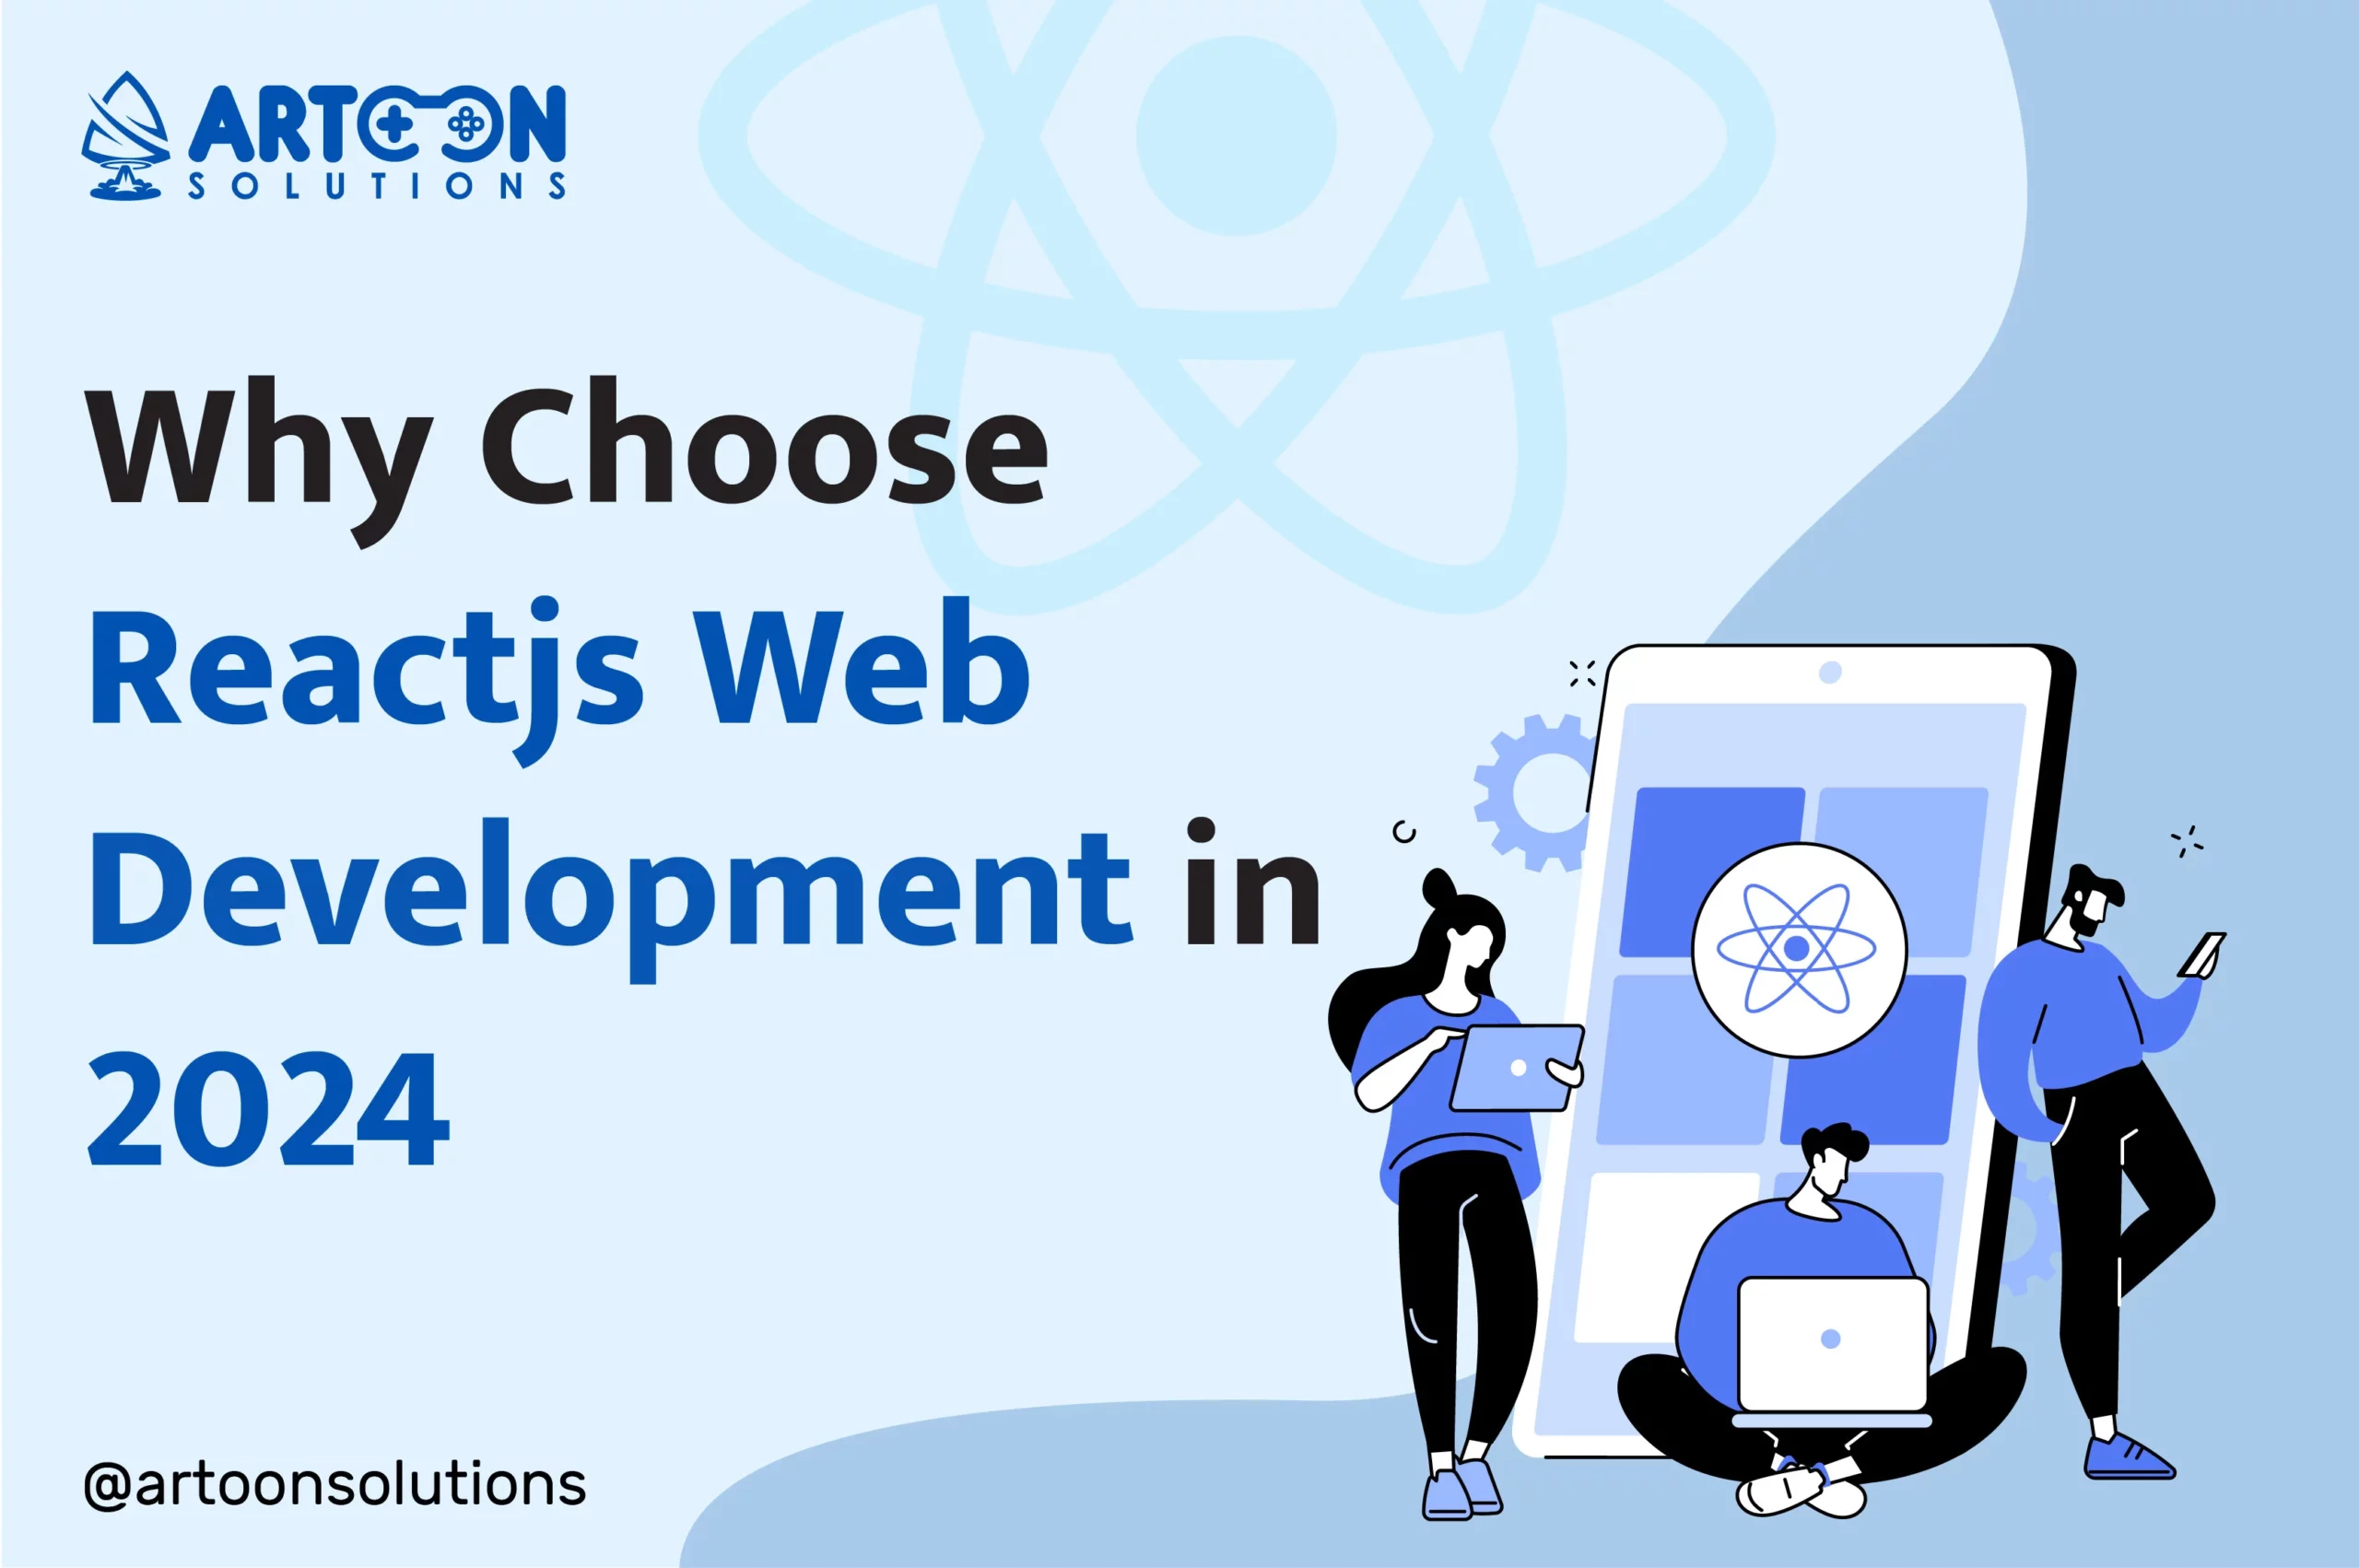 Why Choose Reactjs Web Development in 2024